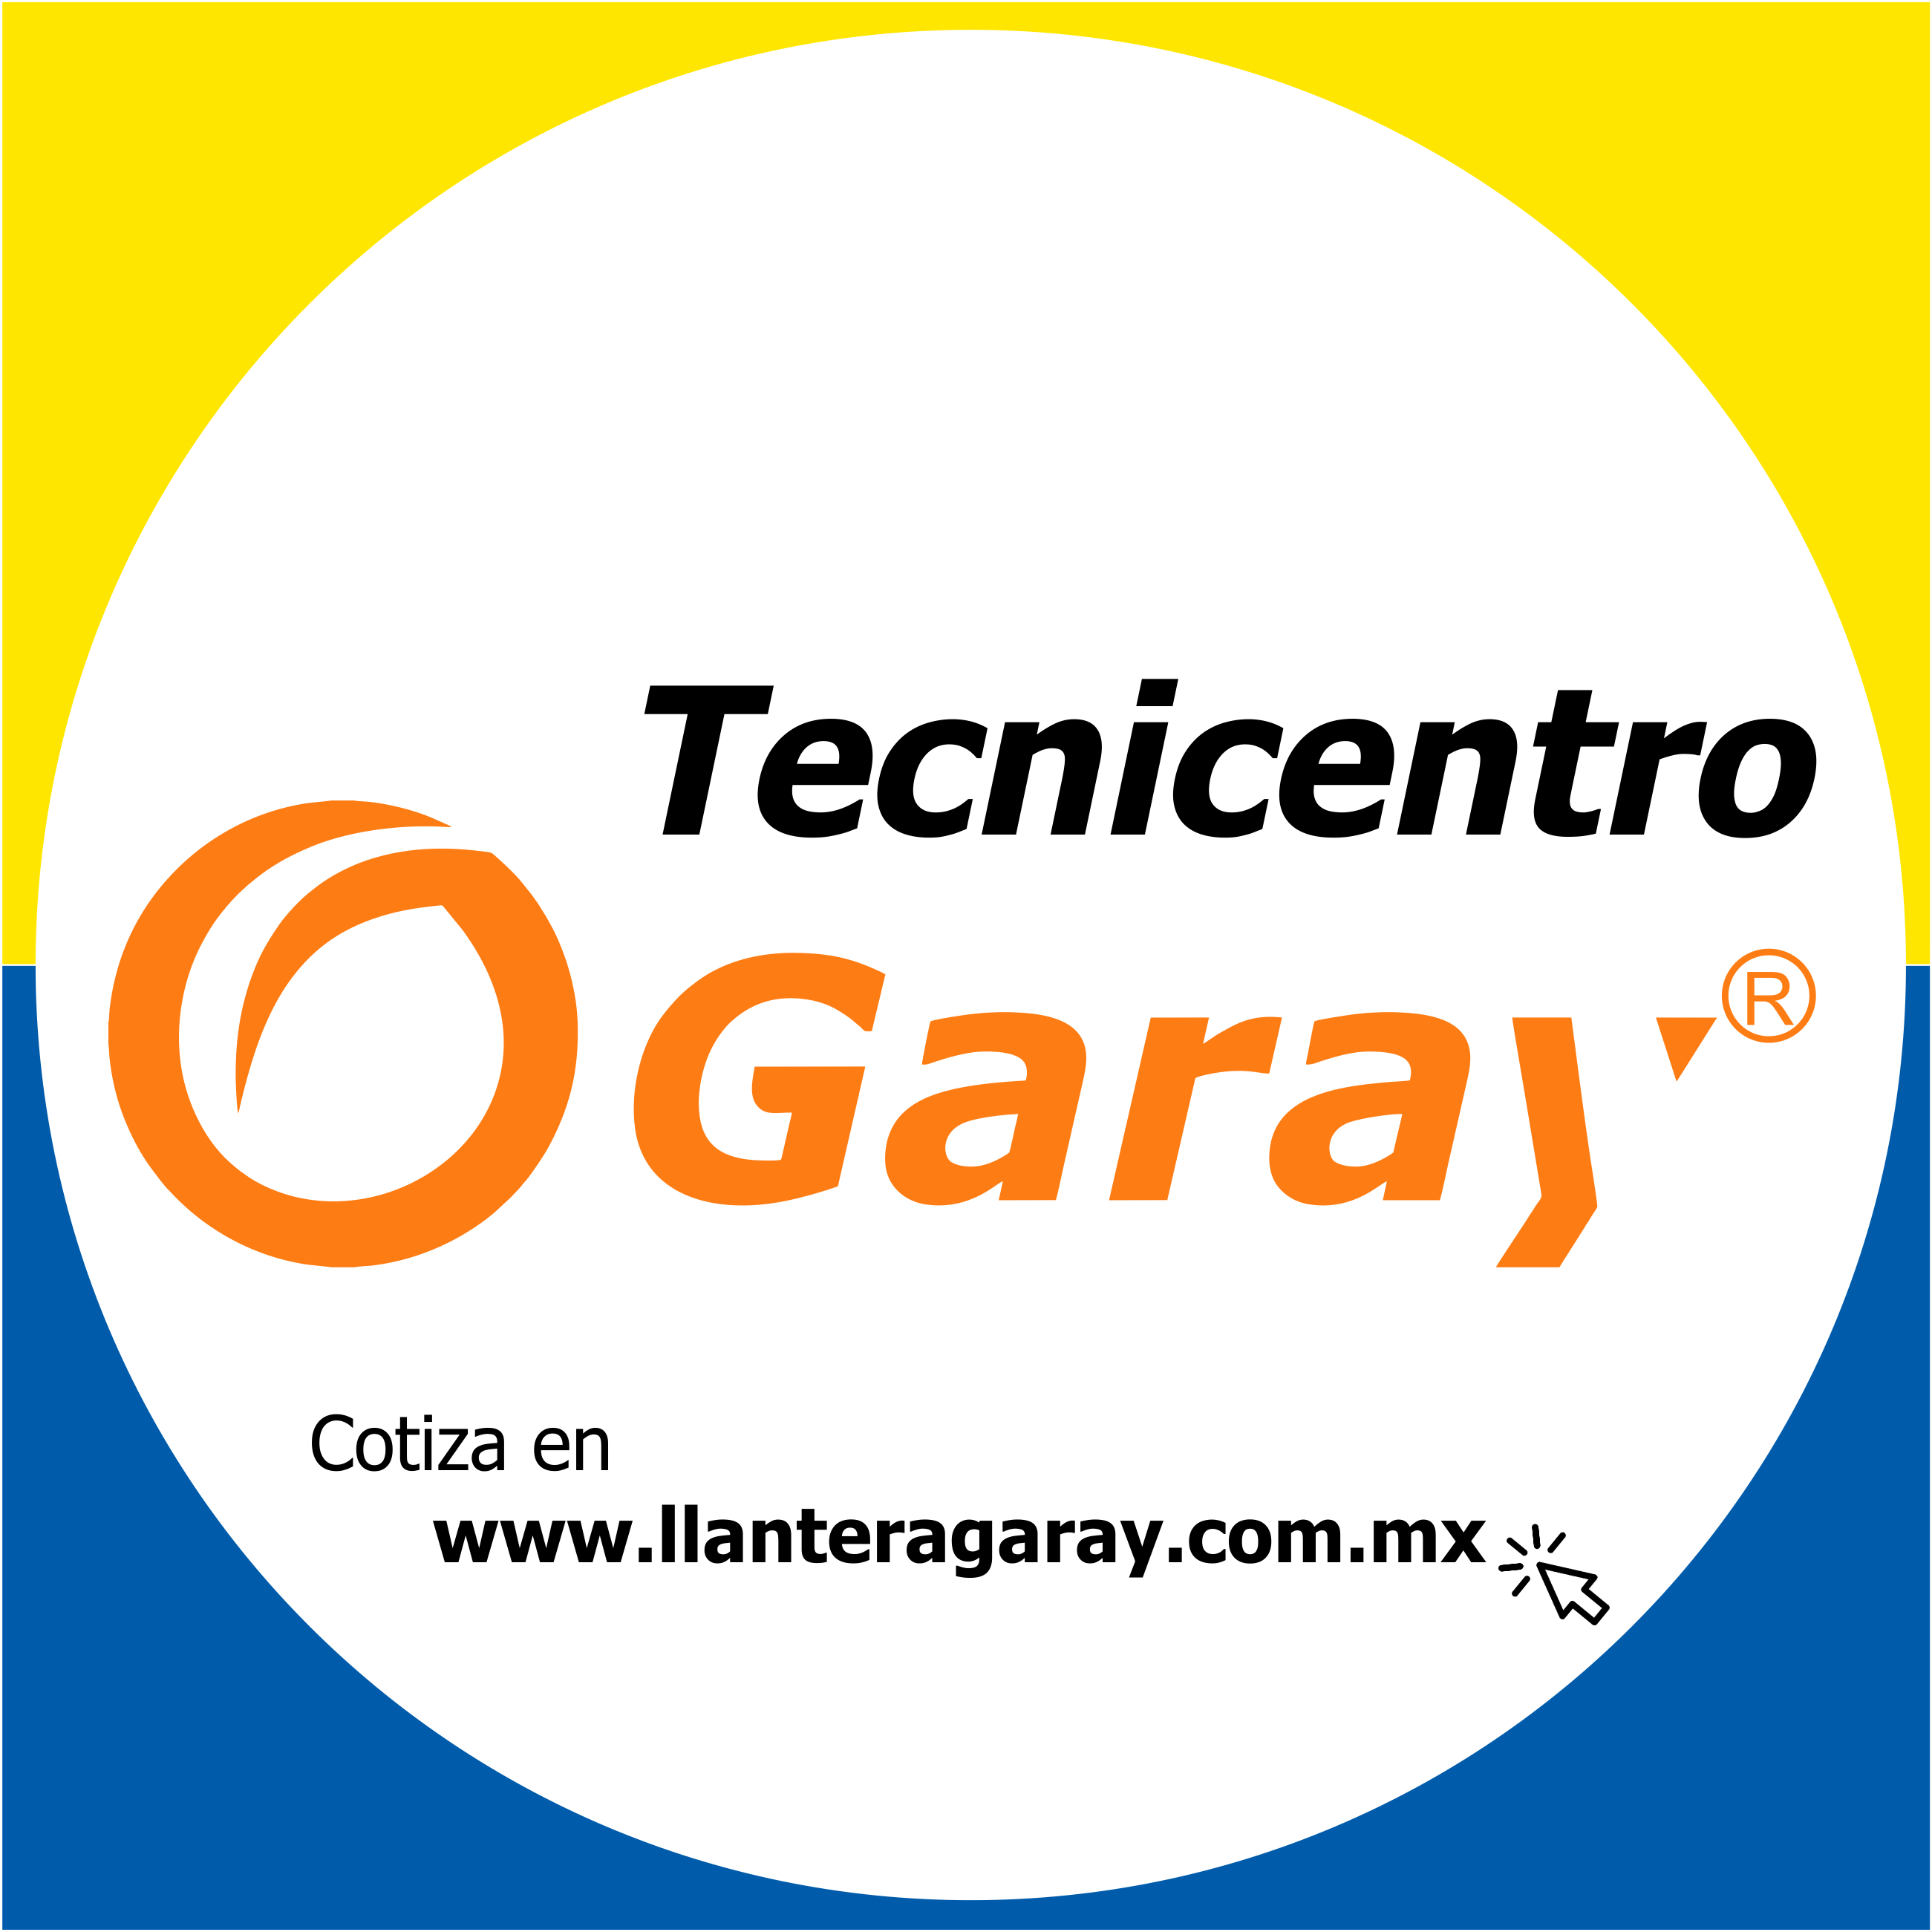 BFGoodrich OFF ROAD Center Llantera Garay Puebla